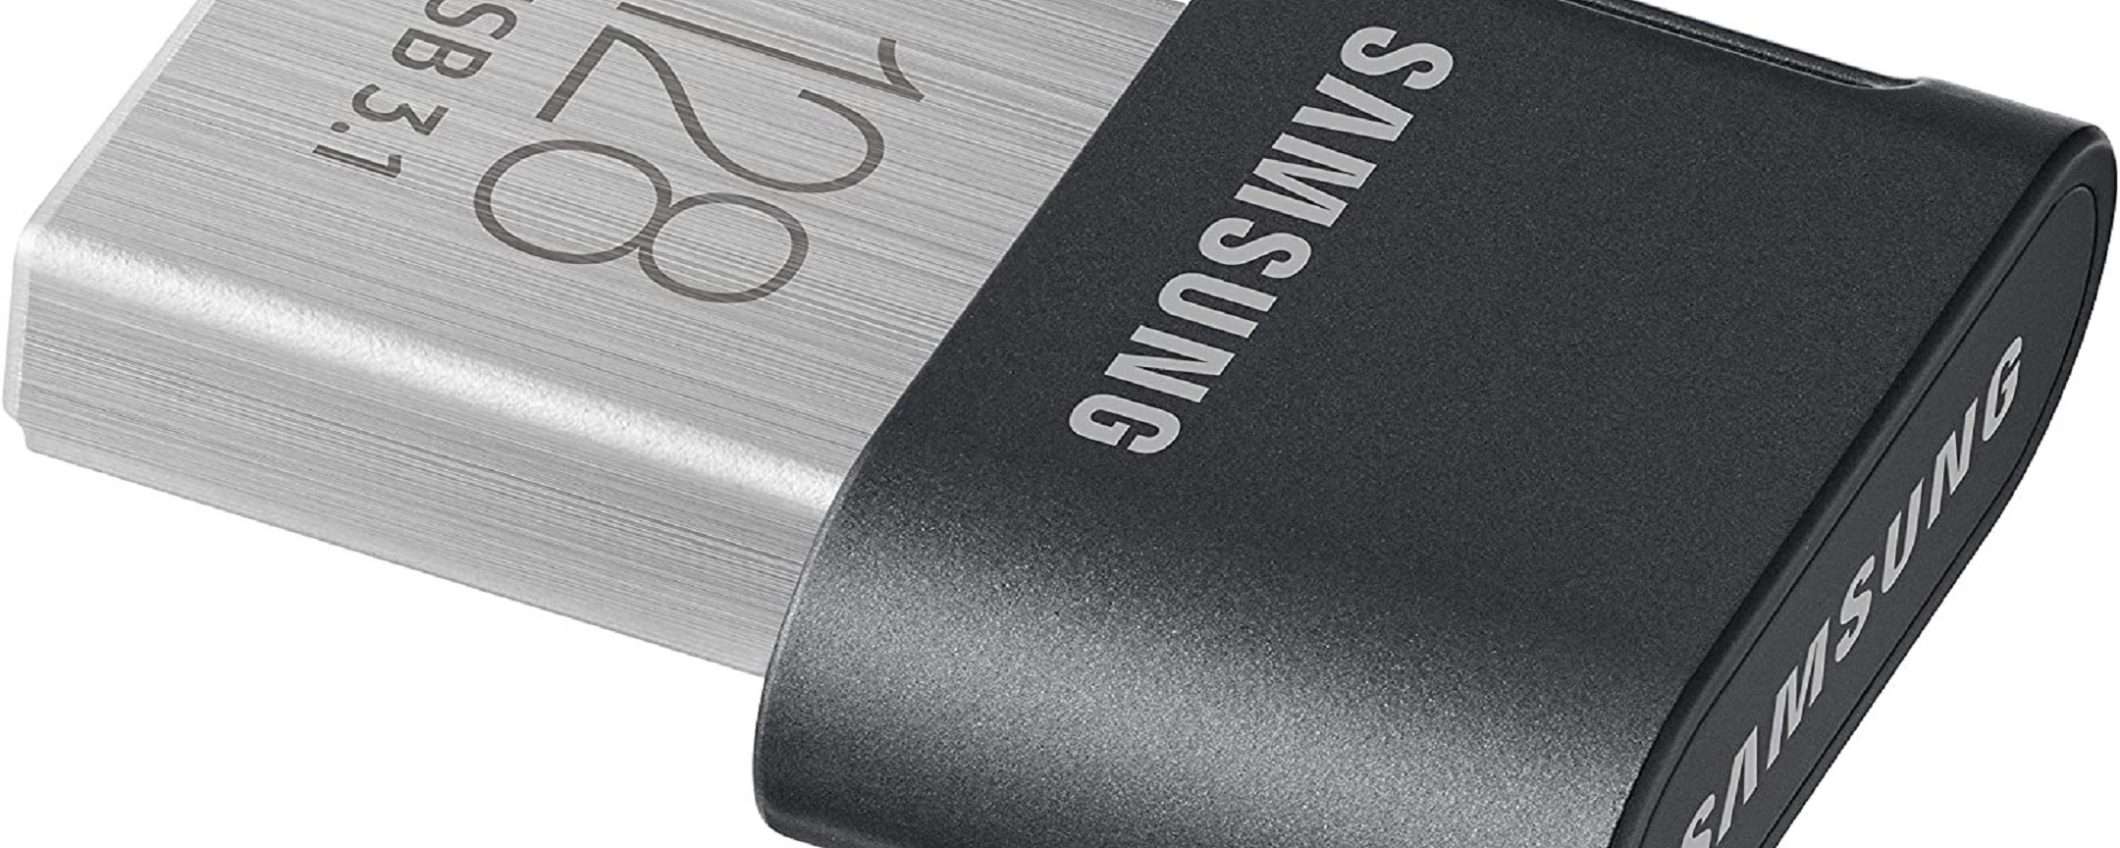 Samsung Fit Plus da 128 GB: sicurezza e prestazioni a soli 30€